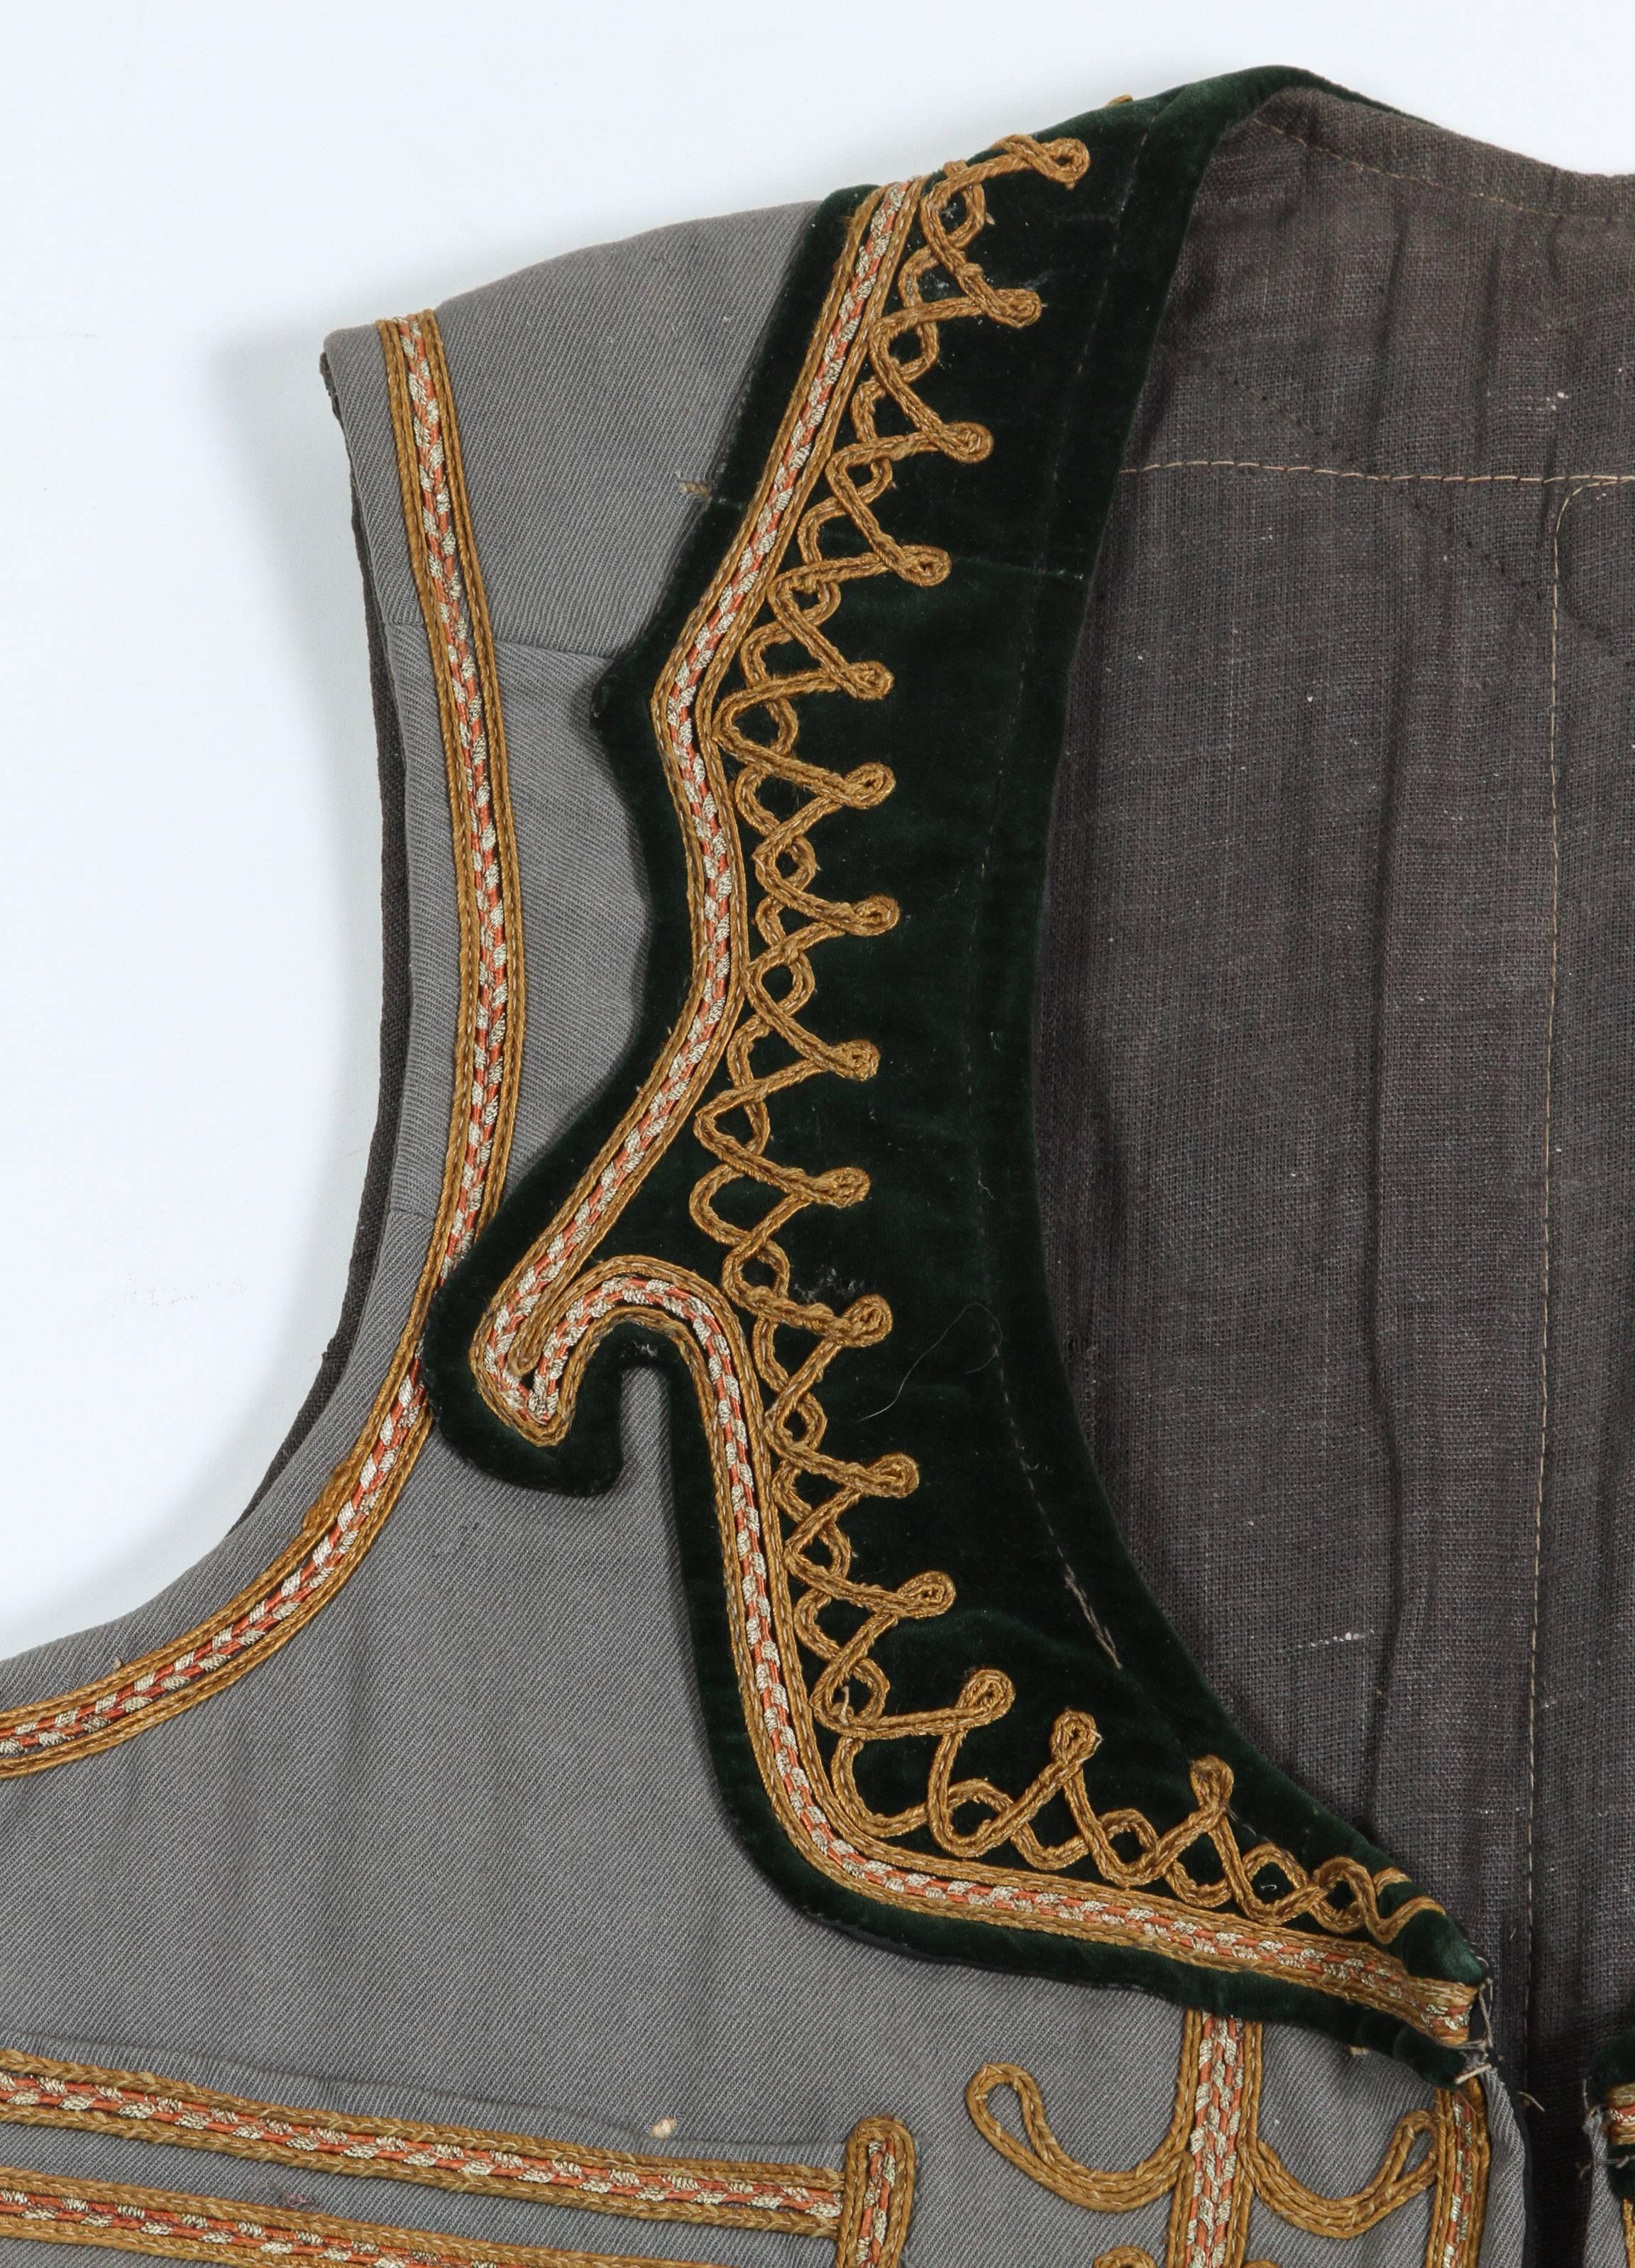 Vintage Folk Grec, Balkans cérémonie traditionnelle partie de la tenue costume.
Les motifs de la veste ouverte sont brodés de fils d'or, de fleurs et de motifs géométriques élaborés.
Entièrement doublé, il s'agit d'une superbe pièce de collection en